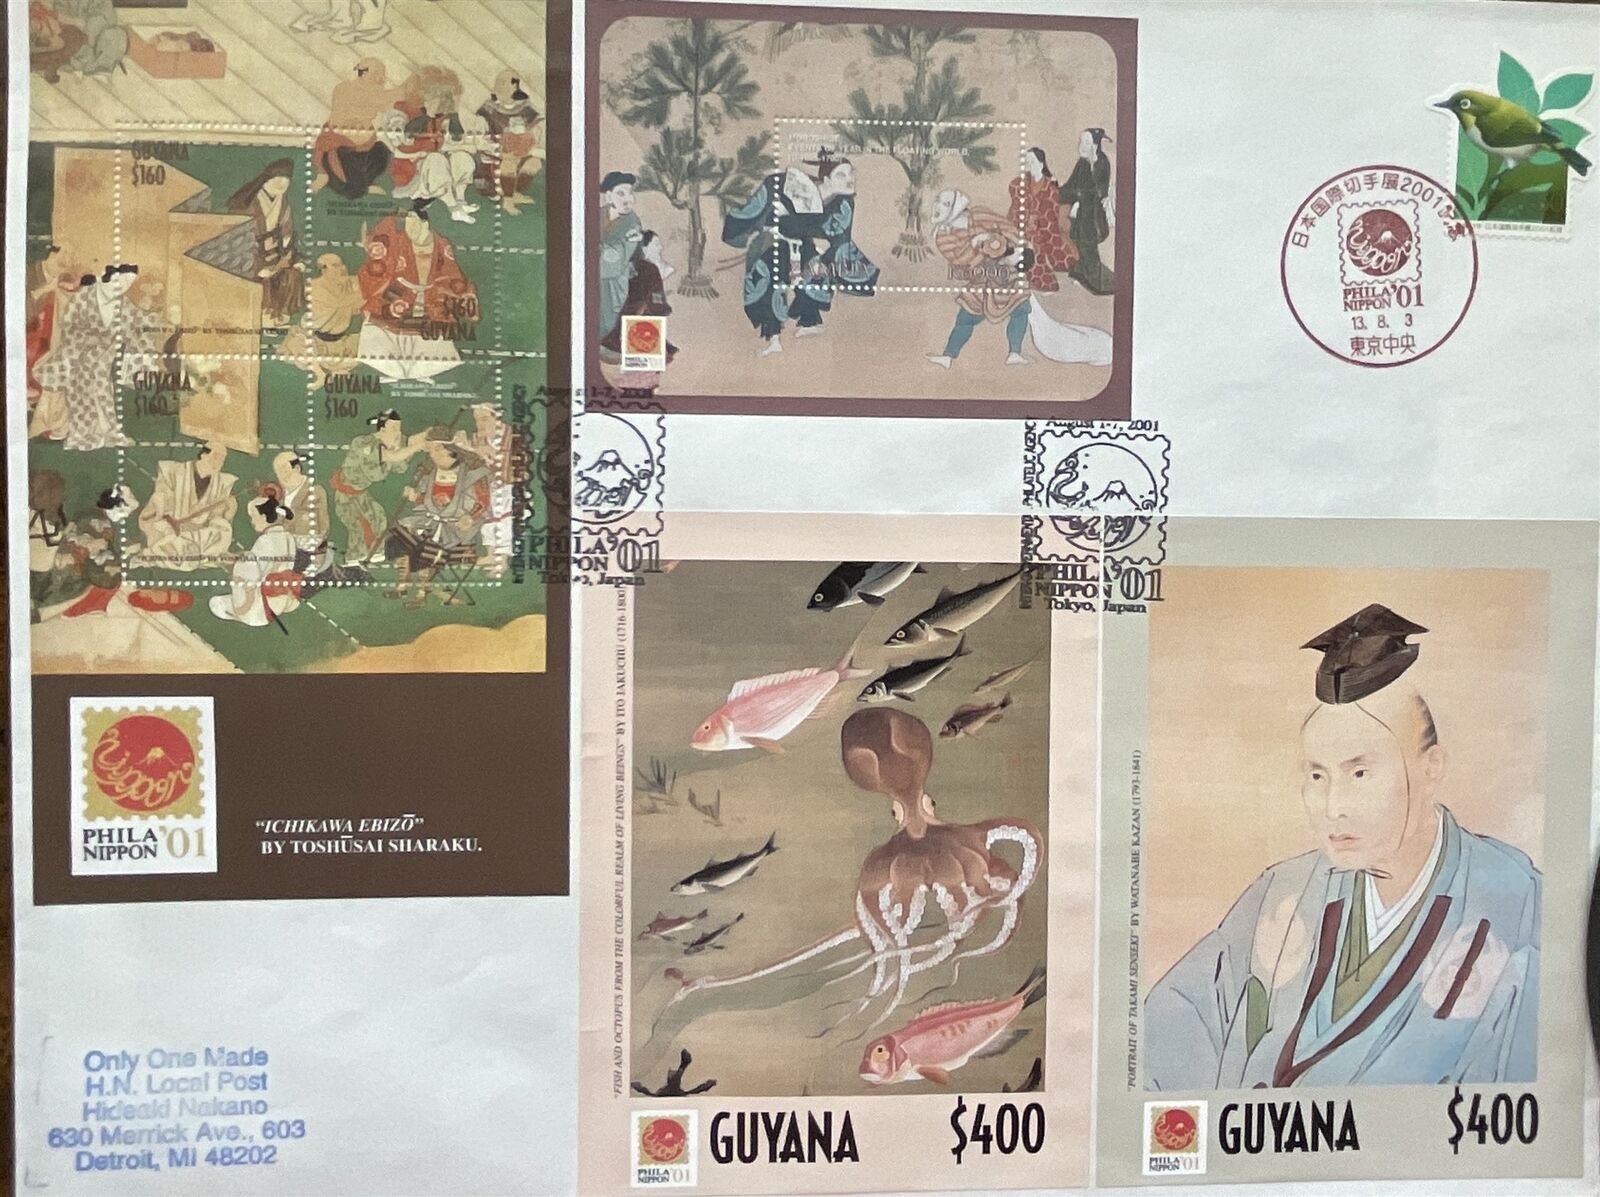 HNLP Hideaki Nakano Phila Nippon '01 Guyana Japanese Art